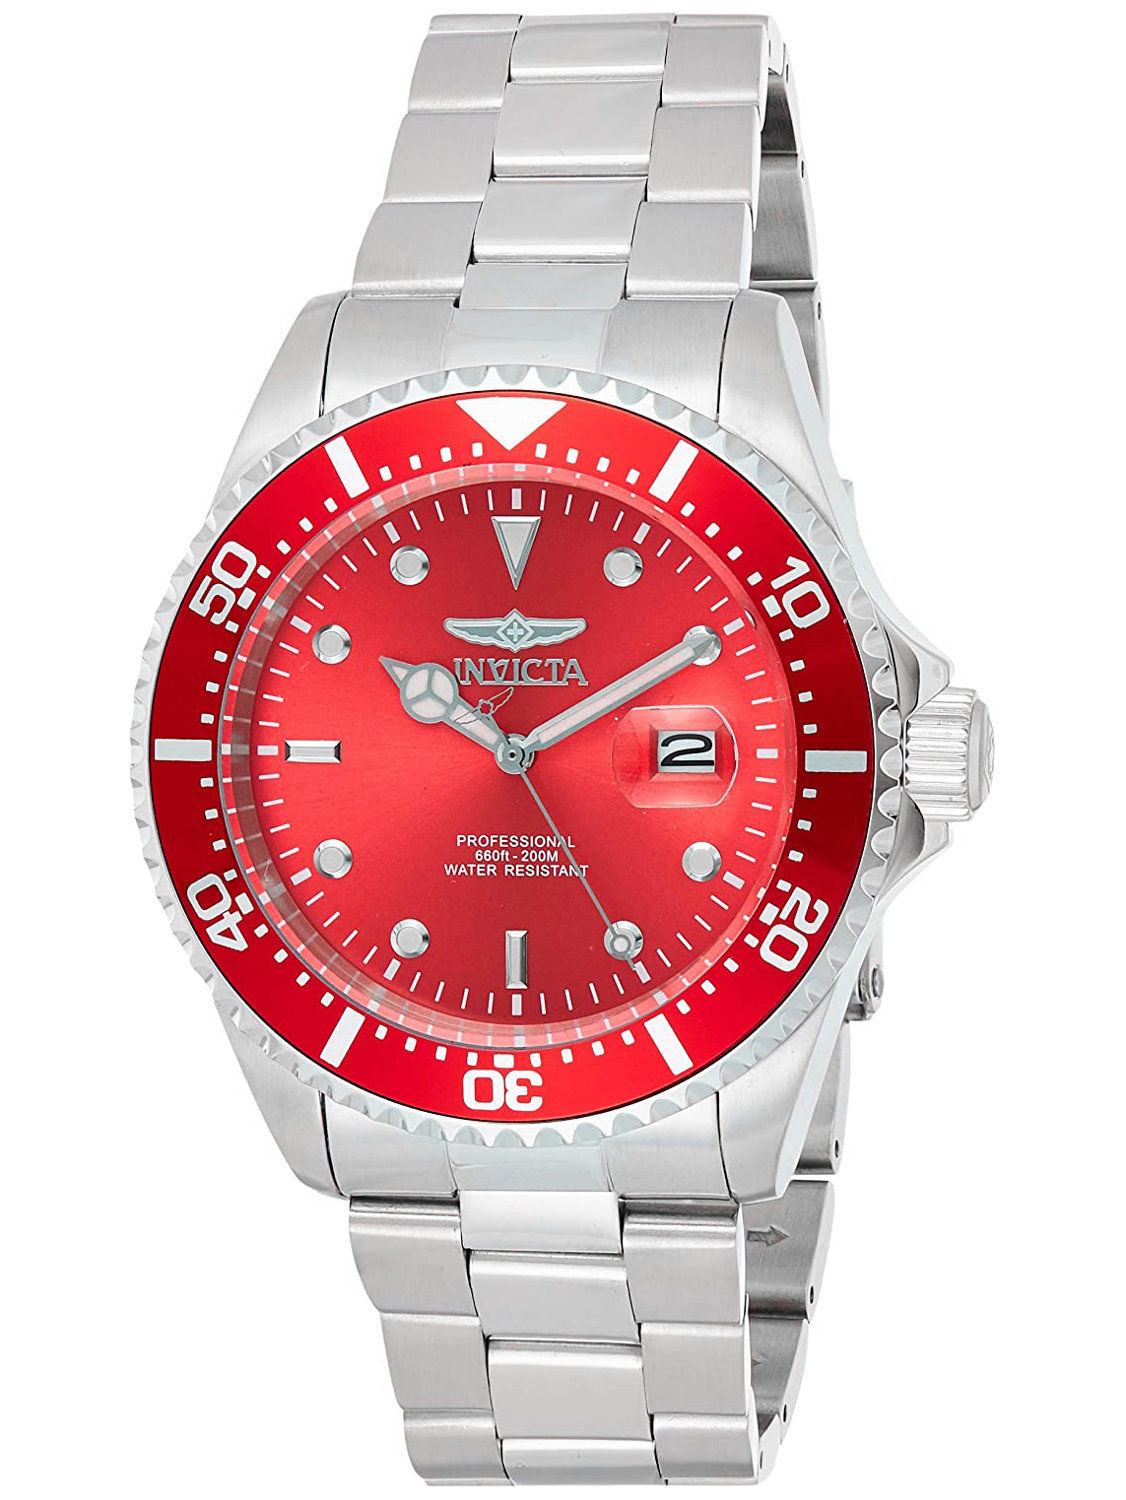 E-shop Pánske hodinky INVICTA PRO DIVER 22048 - WR200m, ciferník 43mm (zv002d)